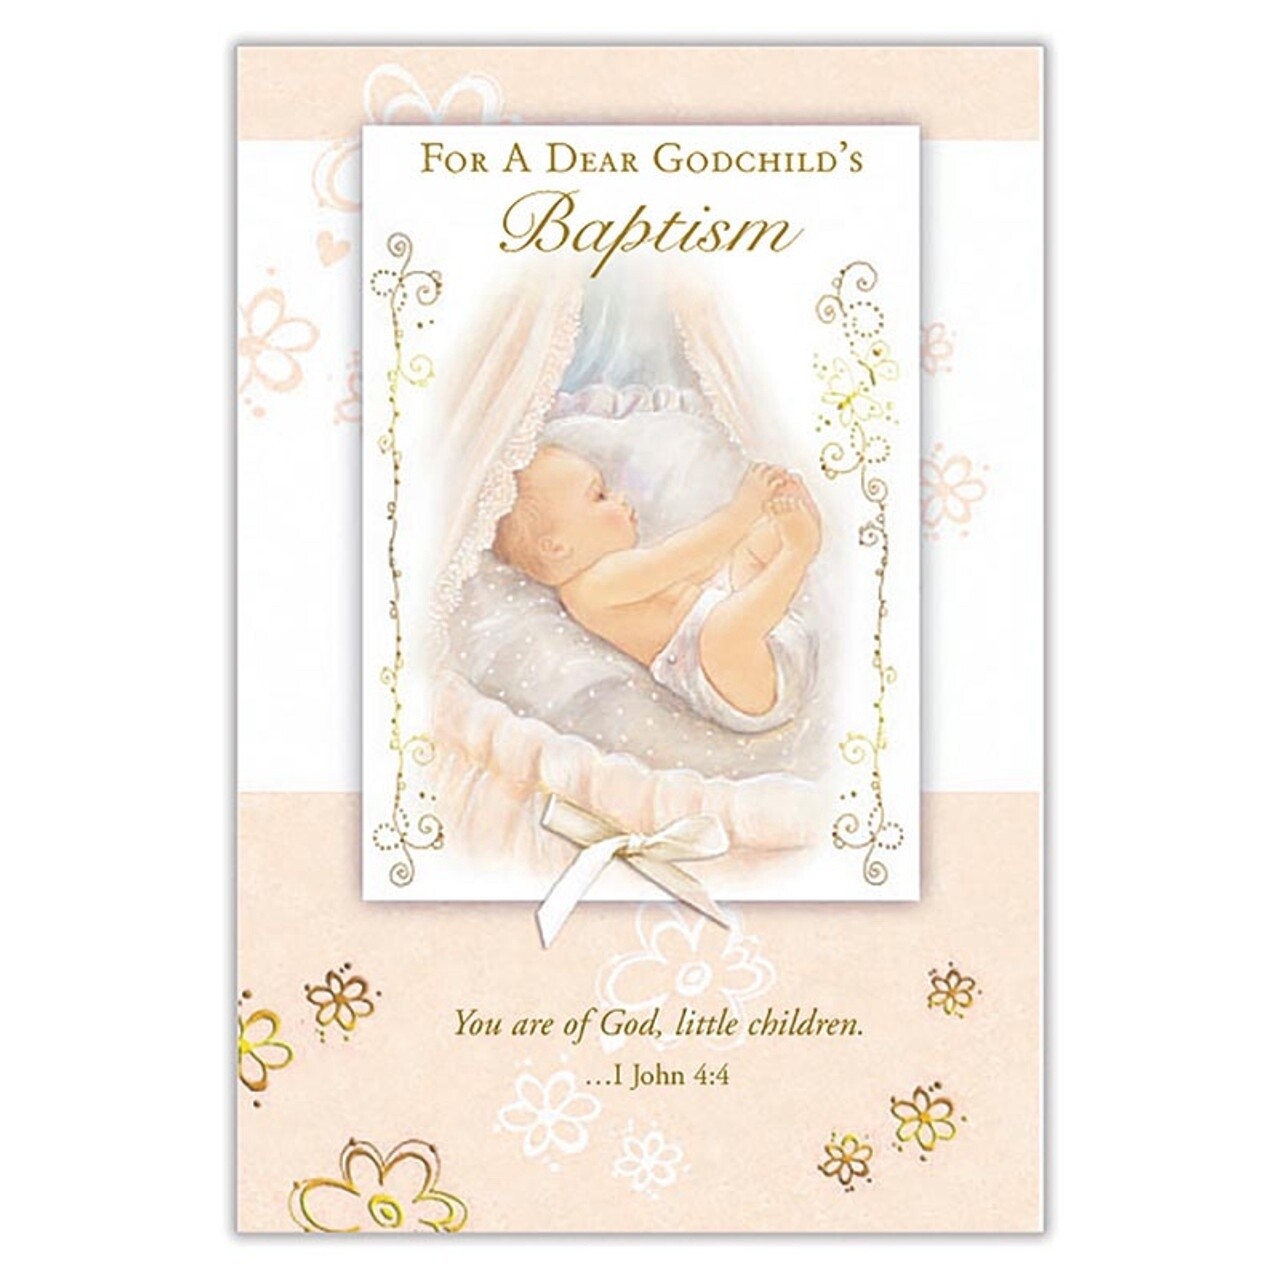 For a Dear Godchild's Baptism Card